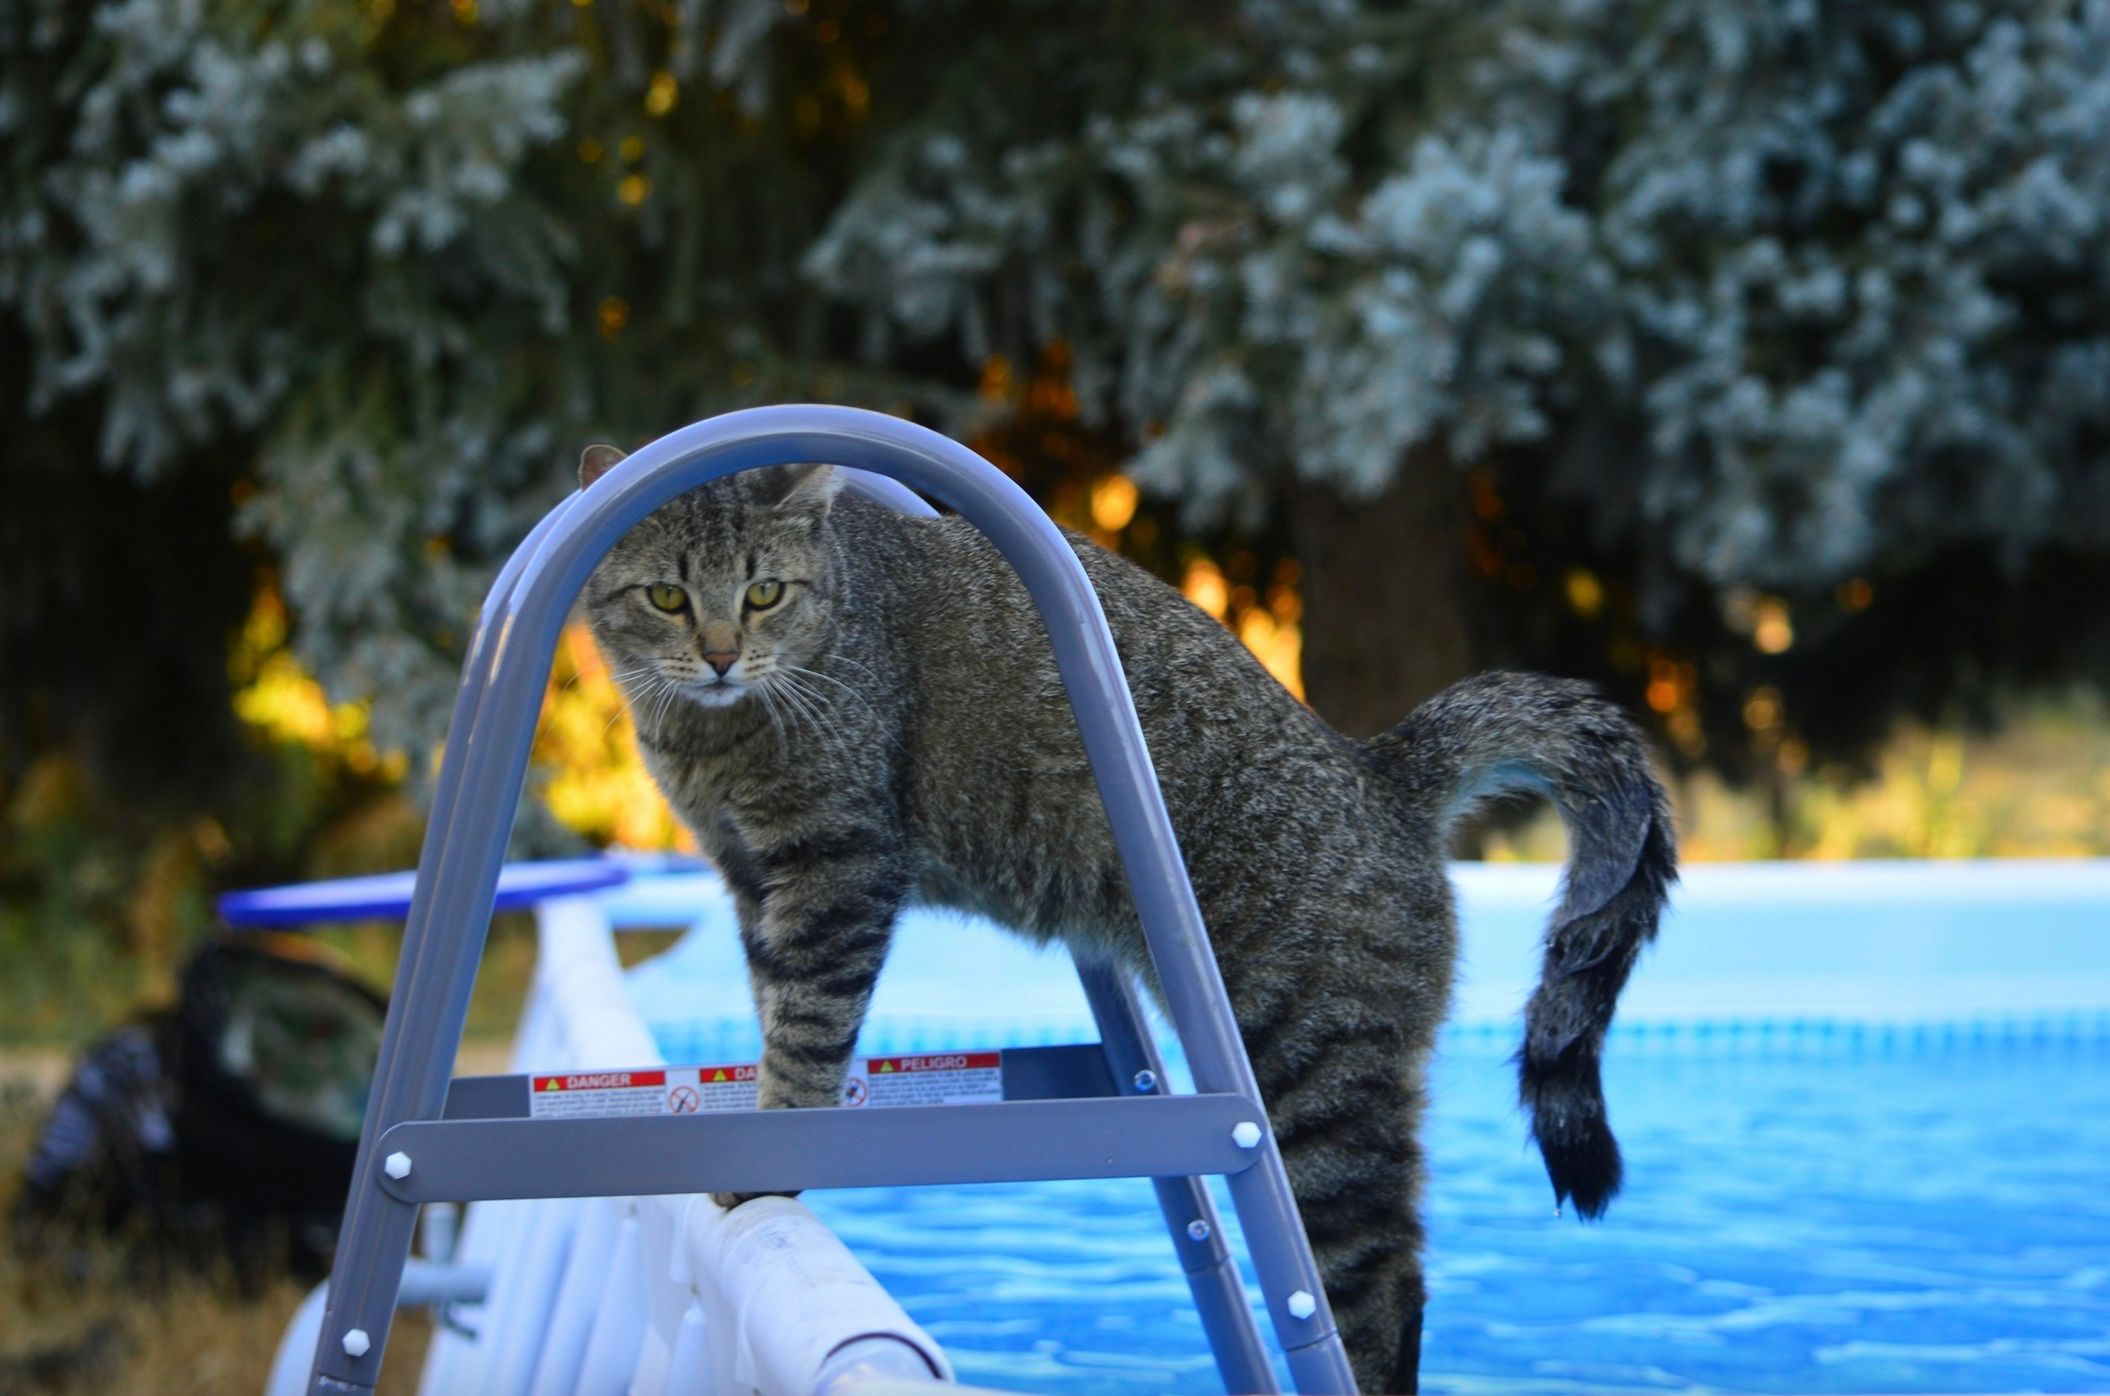 Почему коты боятся воды